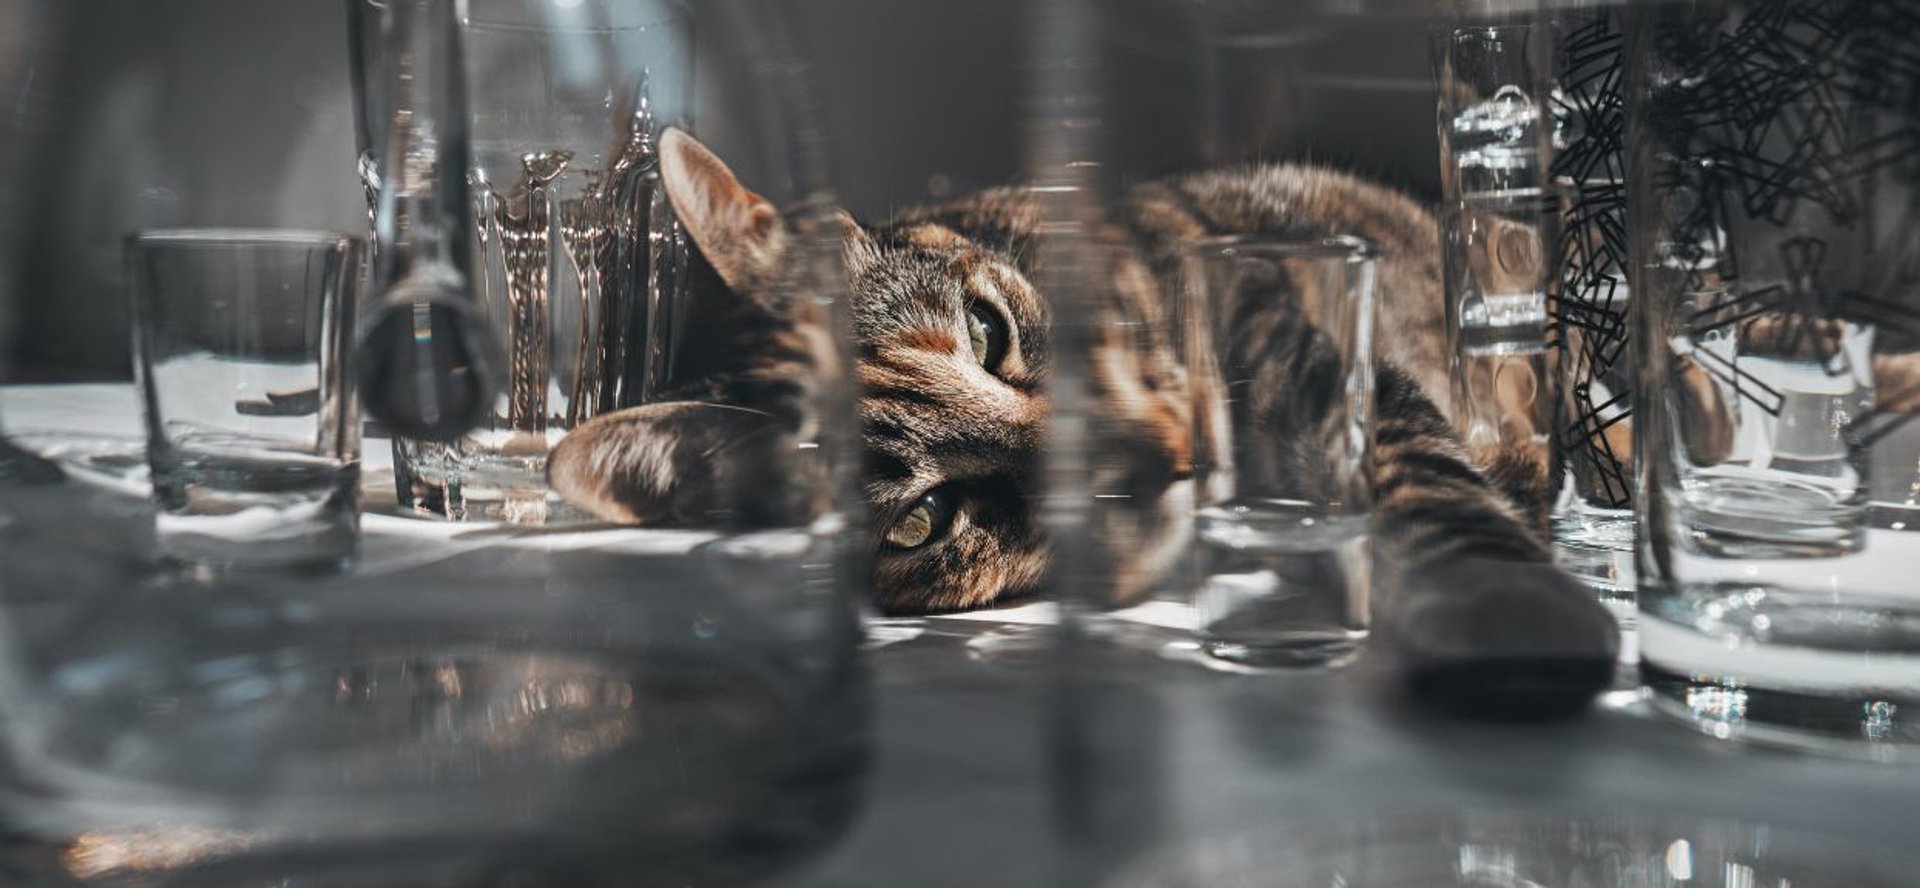 Bury kot leżący wśród szklanek i kieliszków